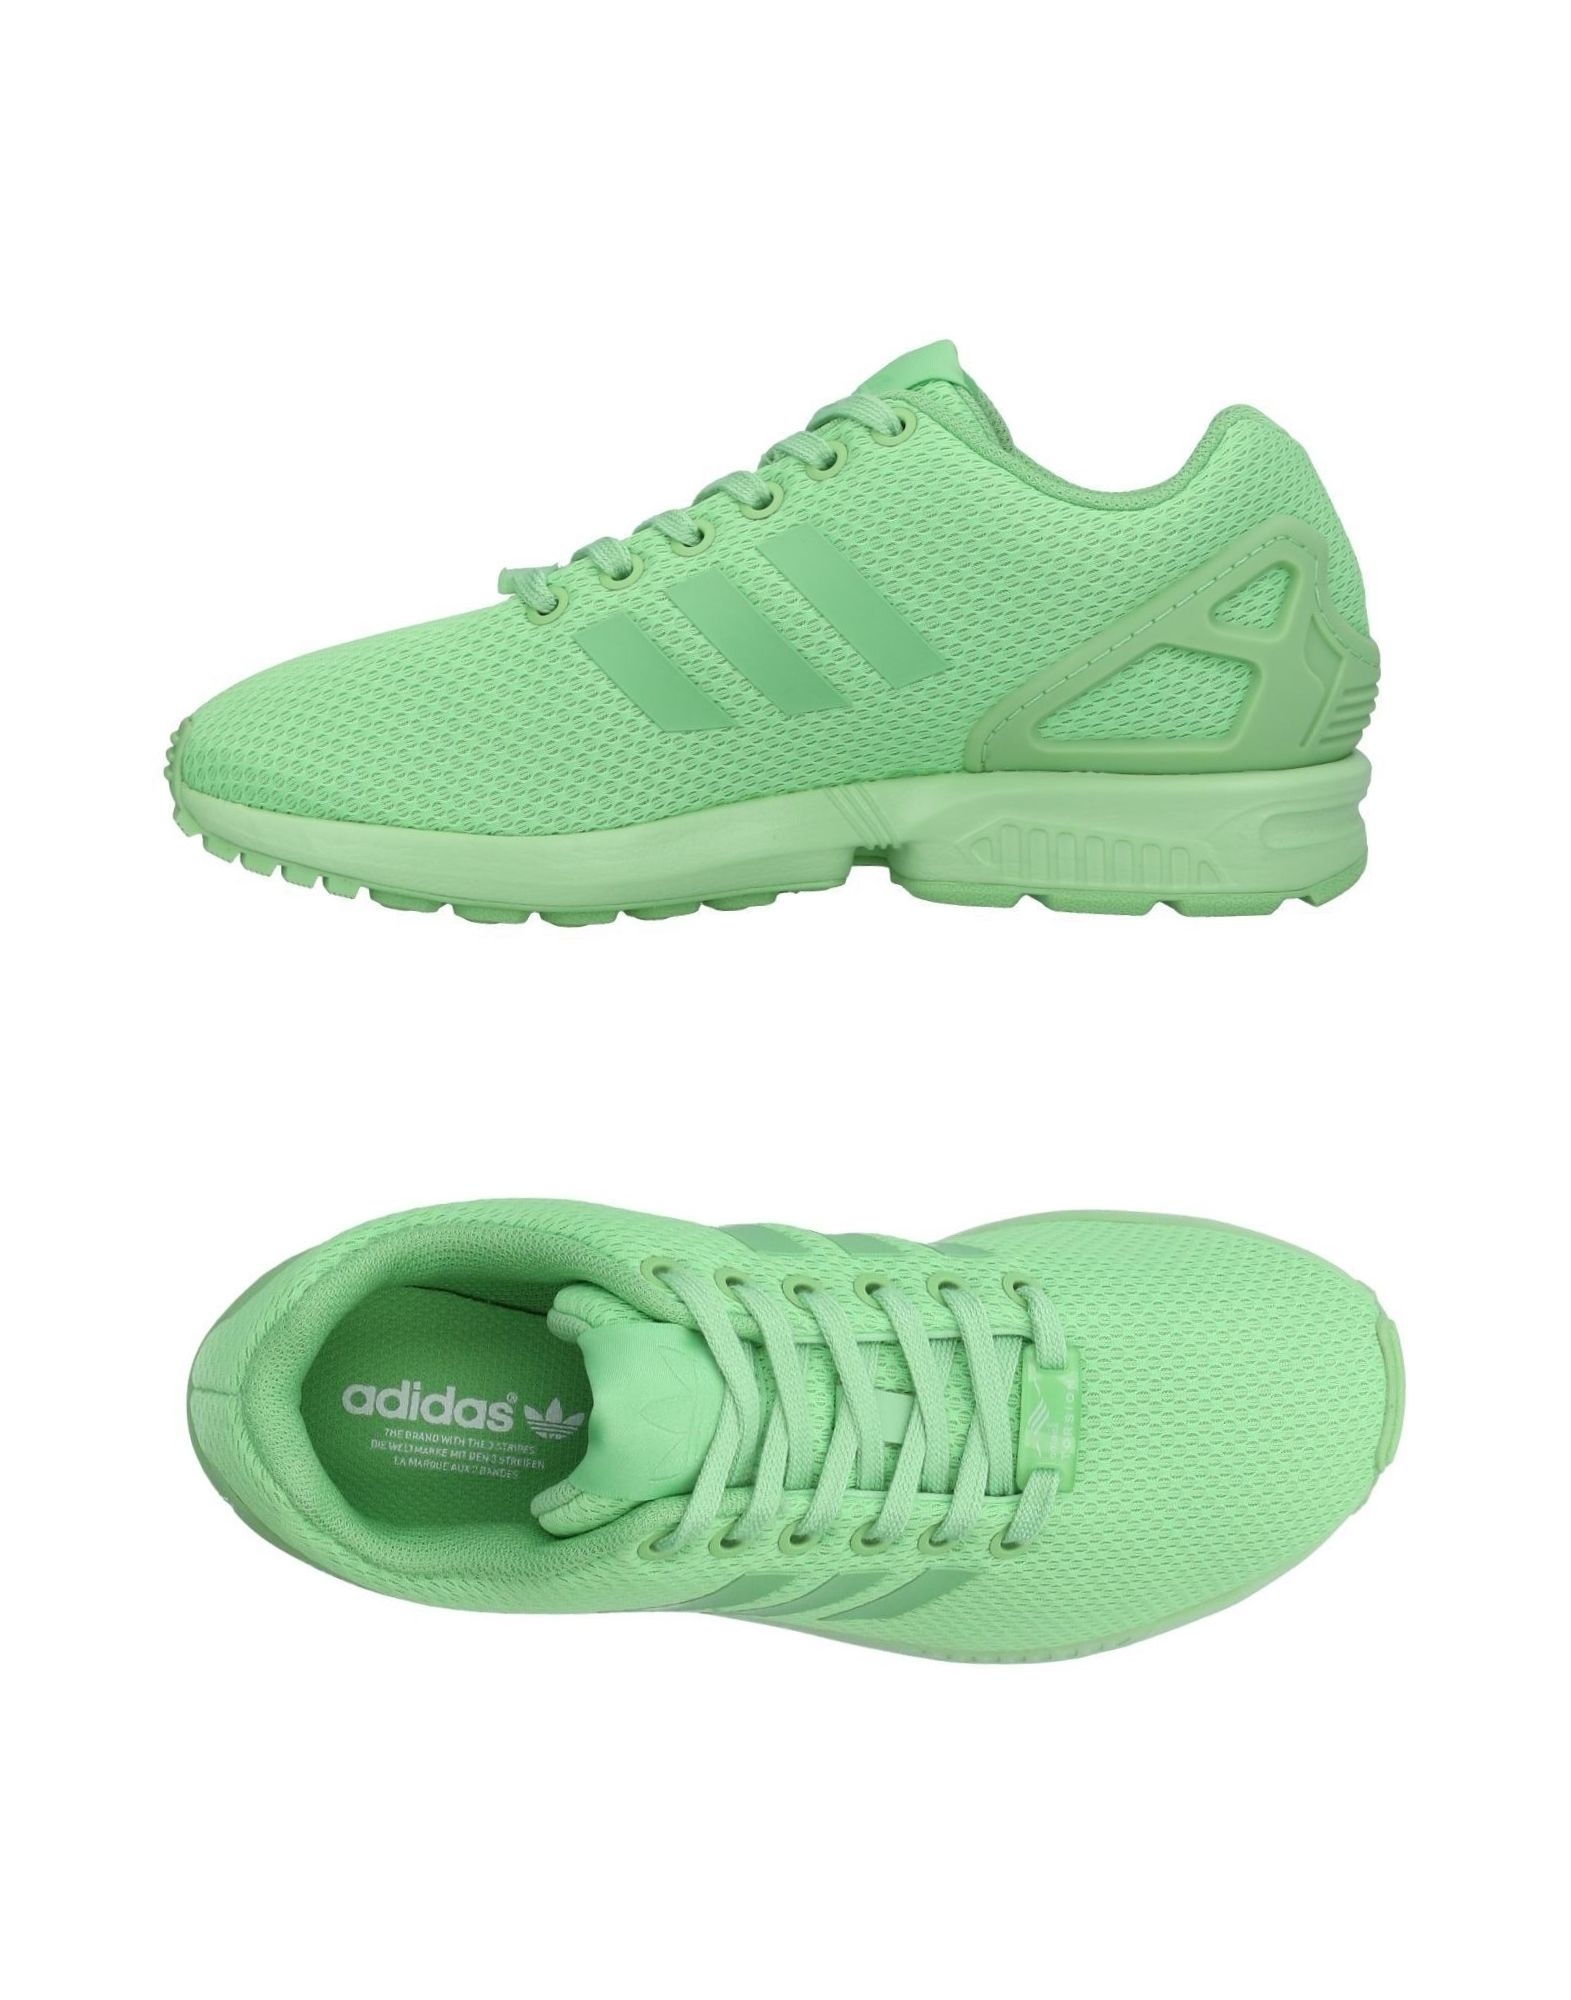 Кеды адидас зеленые. Зеленые кроссовки адидас response St женские зеленые. Кеды адидас зеленые женские. Зеленые кроссовки adidas 2017. Адидас кеды бледно зеленые.